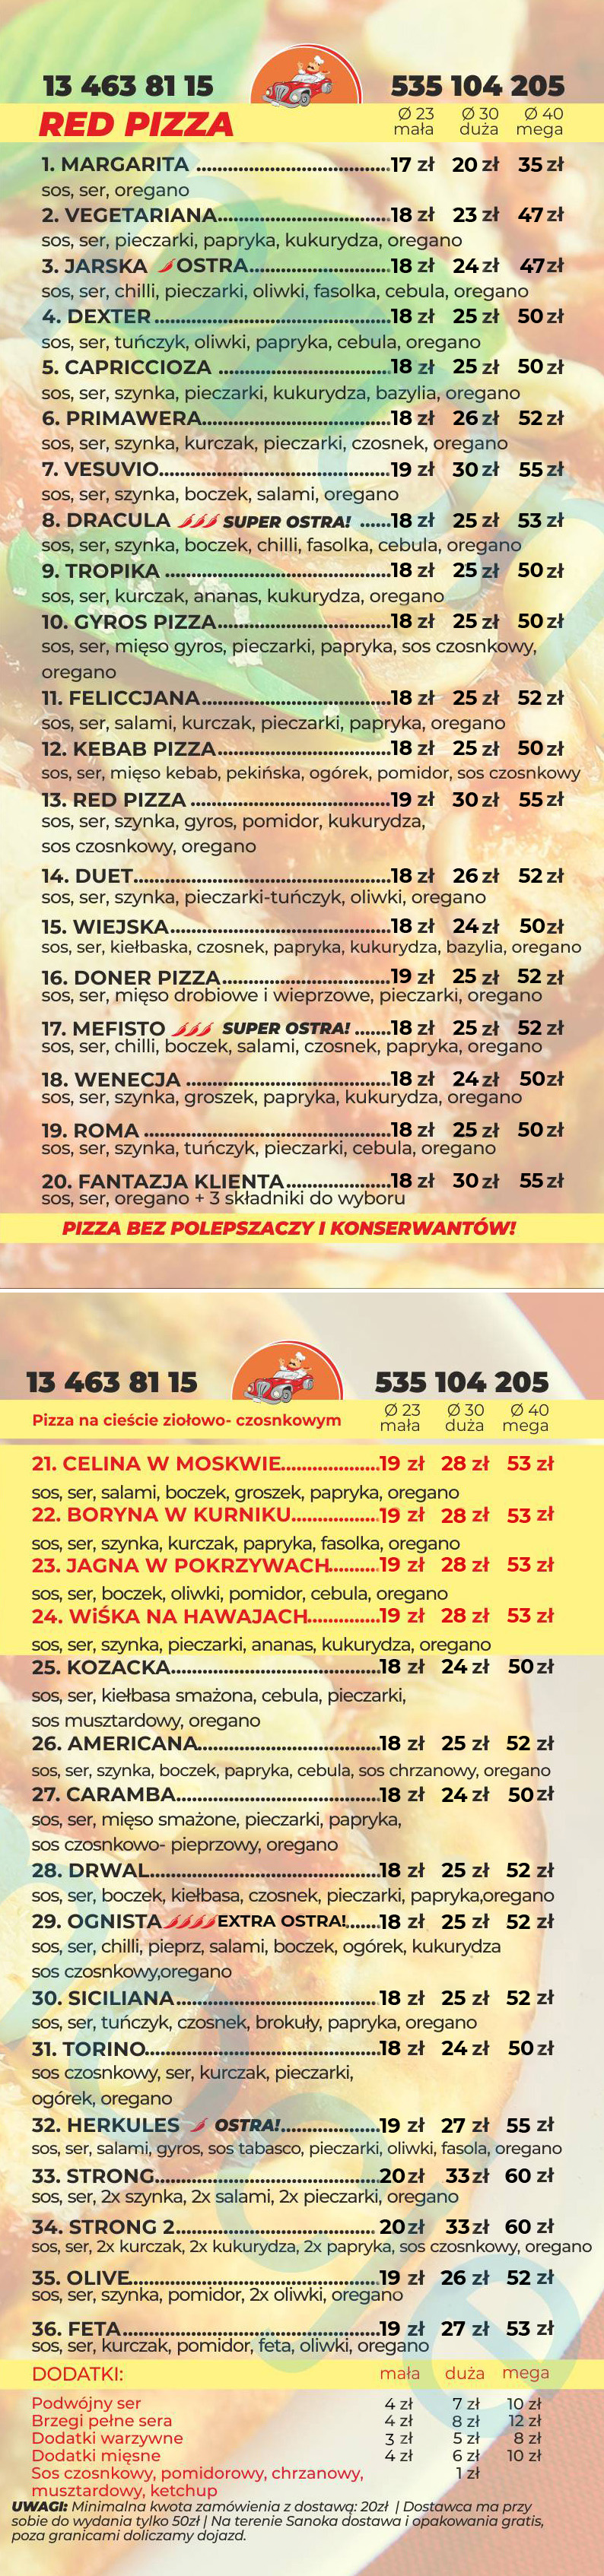 red-pizza-menu2